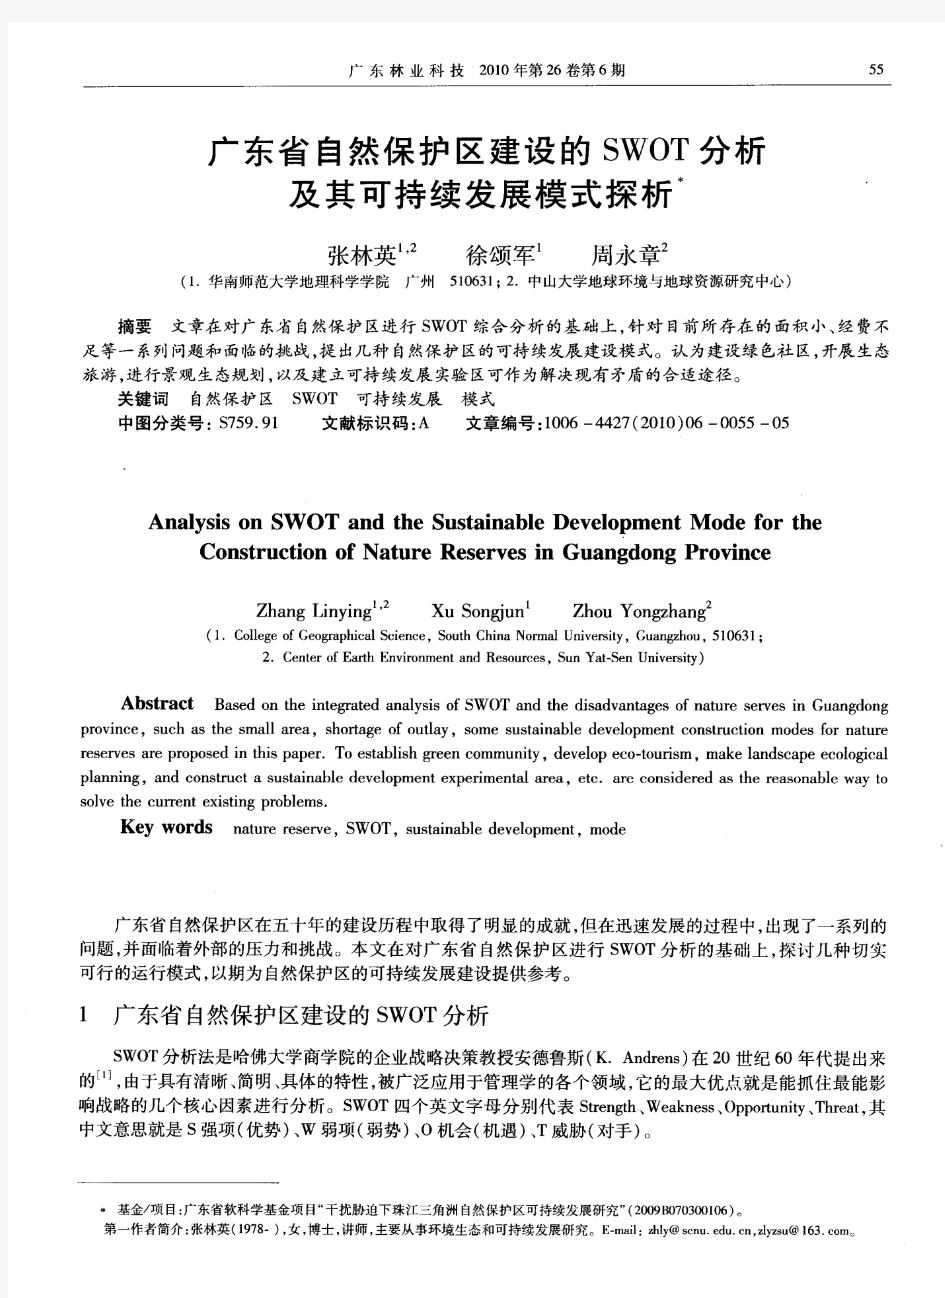 广东省自然保护区建设的SWOT分析及其可持续发展模式探析